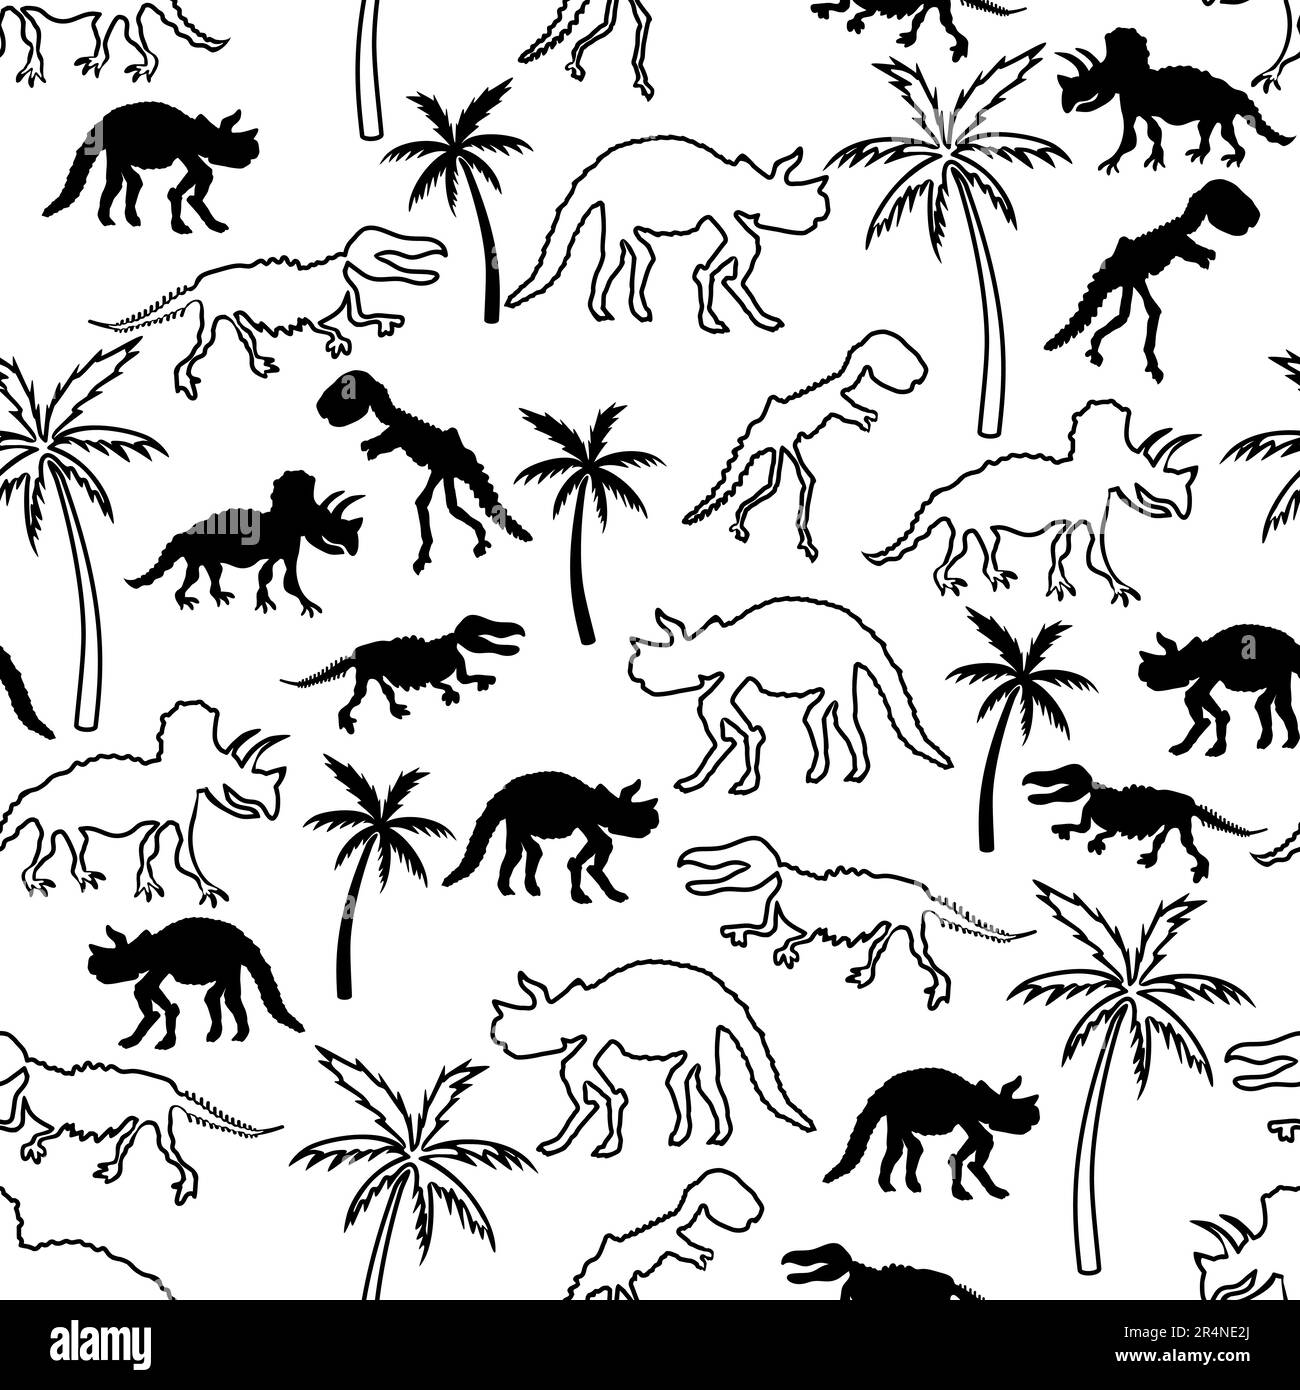 Dinosaurierskelett und Palme. Nahtloses Muster. Originaldesign mit T-rex, Dinosaurierknochen, Pflanzen. Druck für T-Shirts, Textilien, Web. Stock Vektor